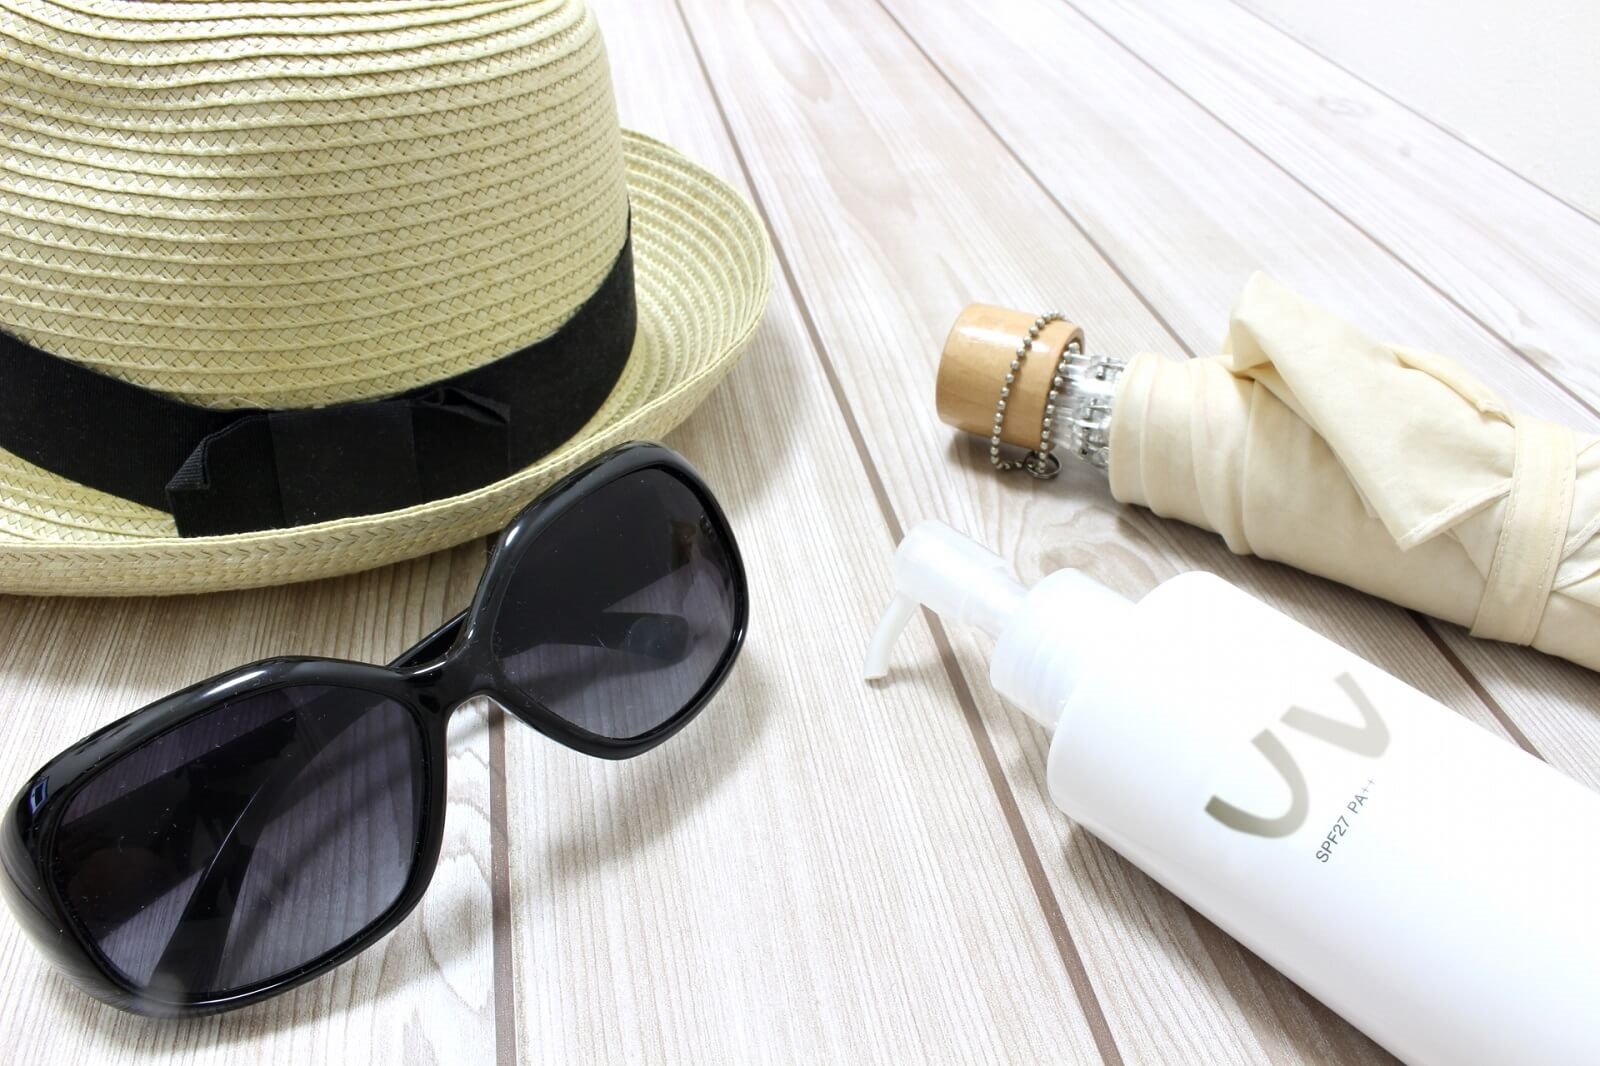 夏にあると便利な持ち物。麦わら帽子、サングラス、日傘、日焼け止めを並べた描写